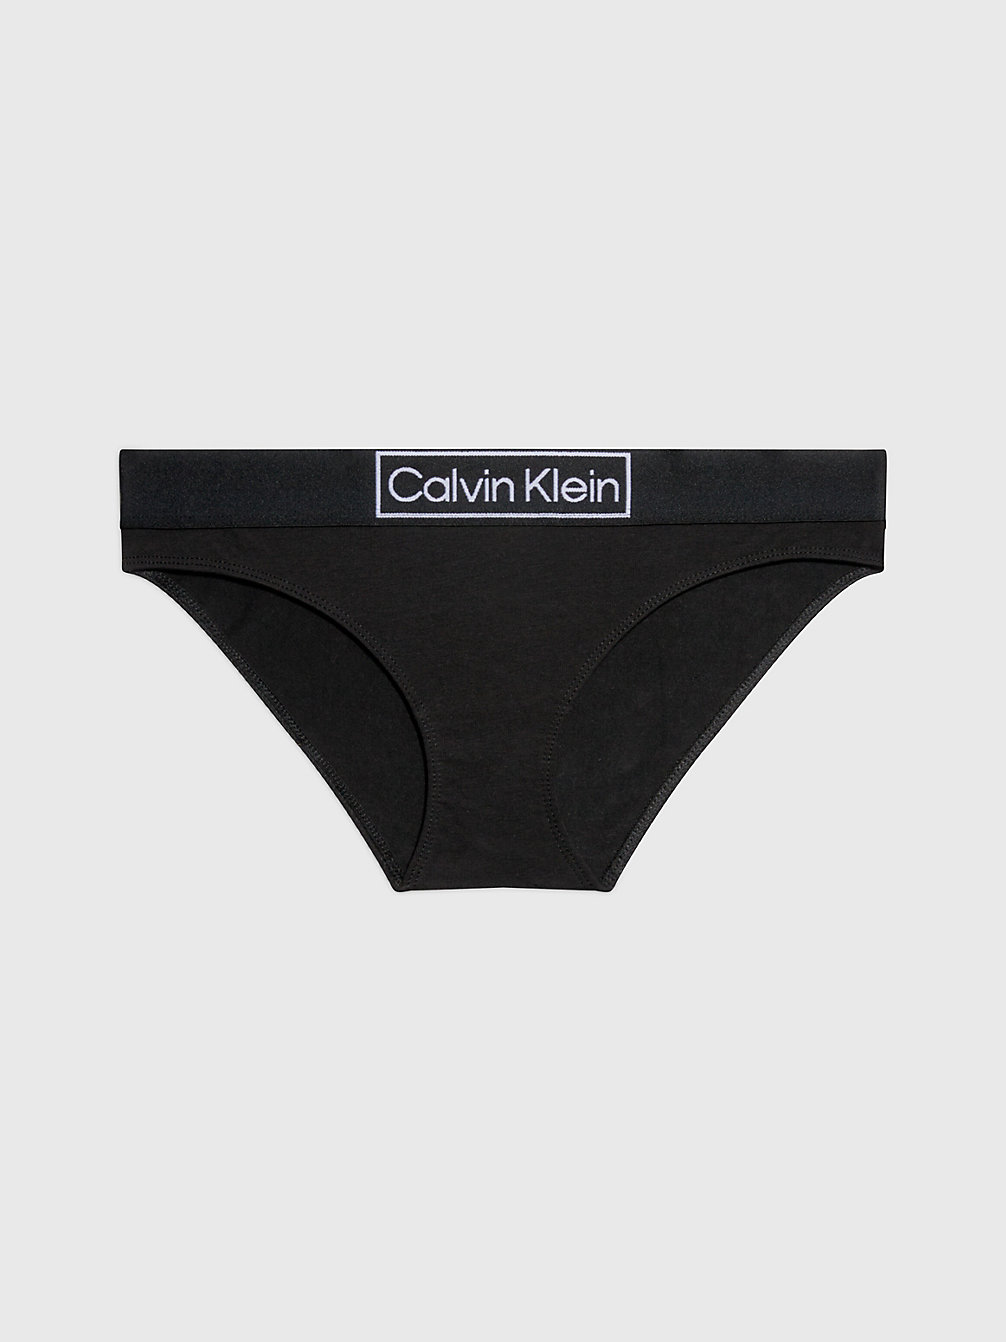 BLACK Slip Bikini - Reimagined Heritage undefined donna Calvin Klein